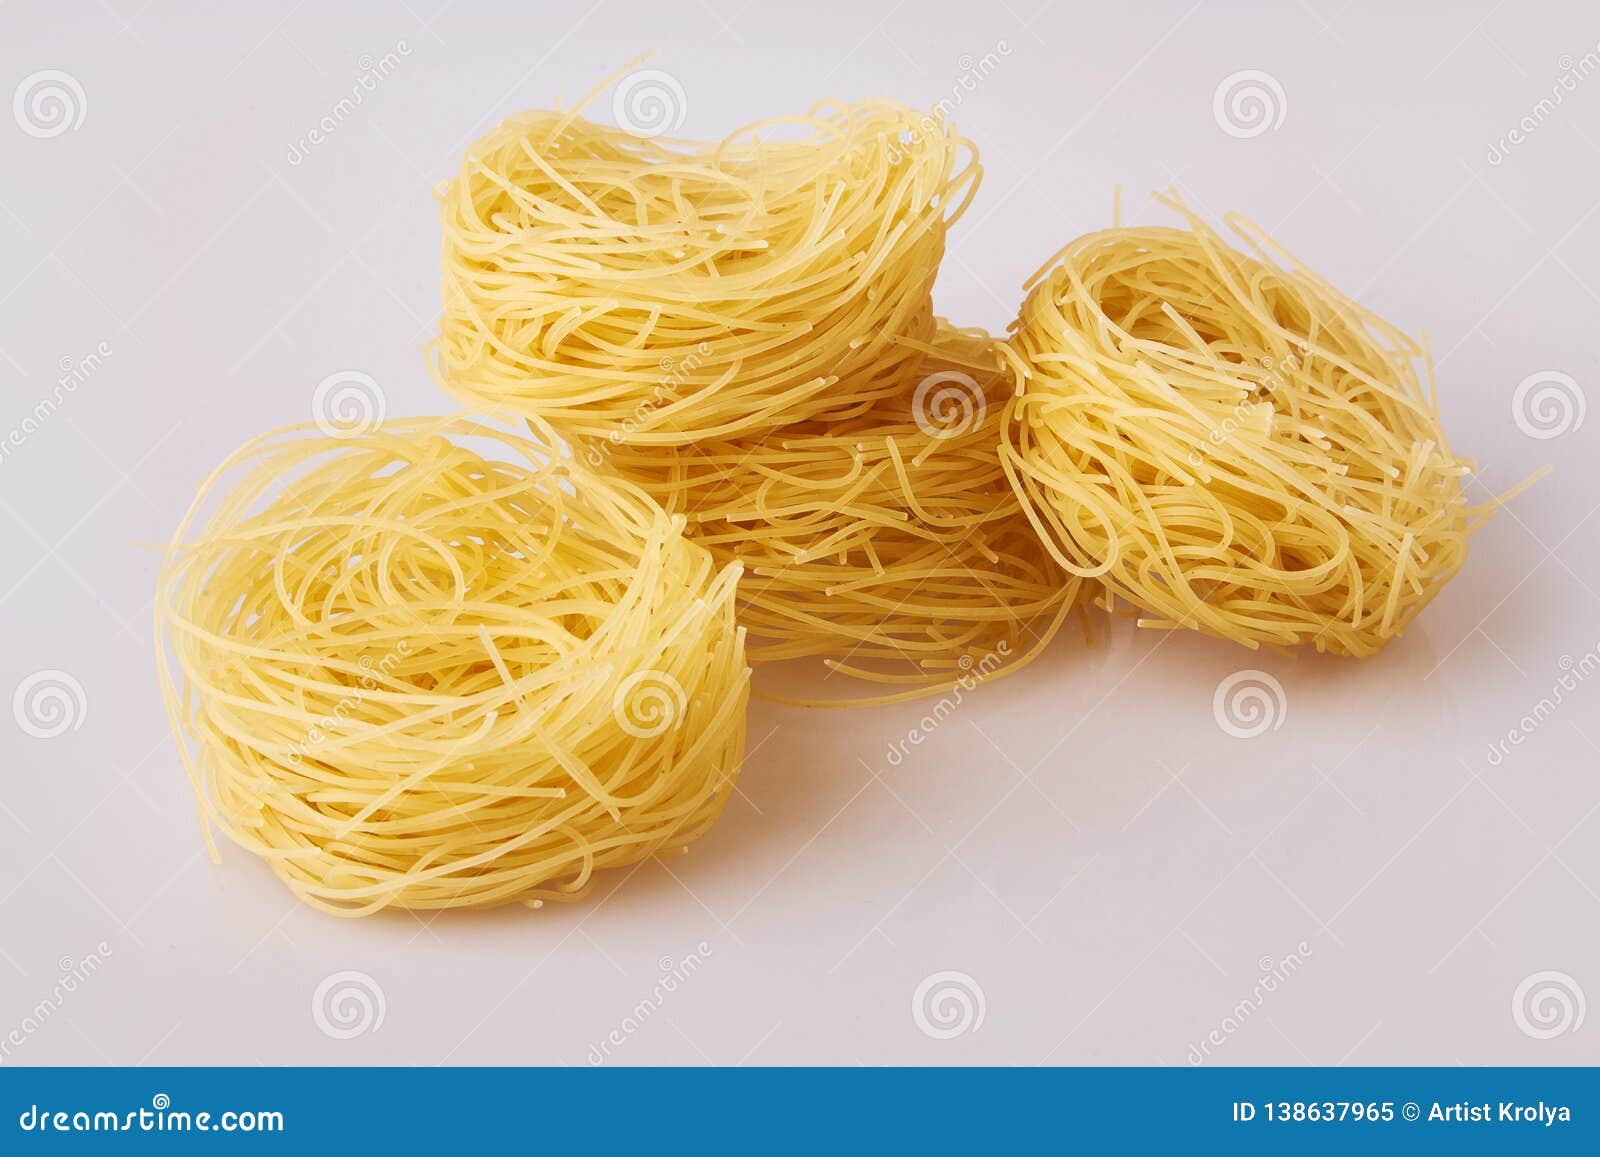 capelli d`angelo, angel`s hair - pasta. homemade pasta. italian cuisine. egg noodles.